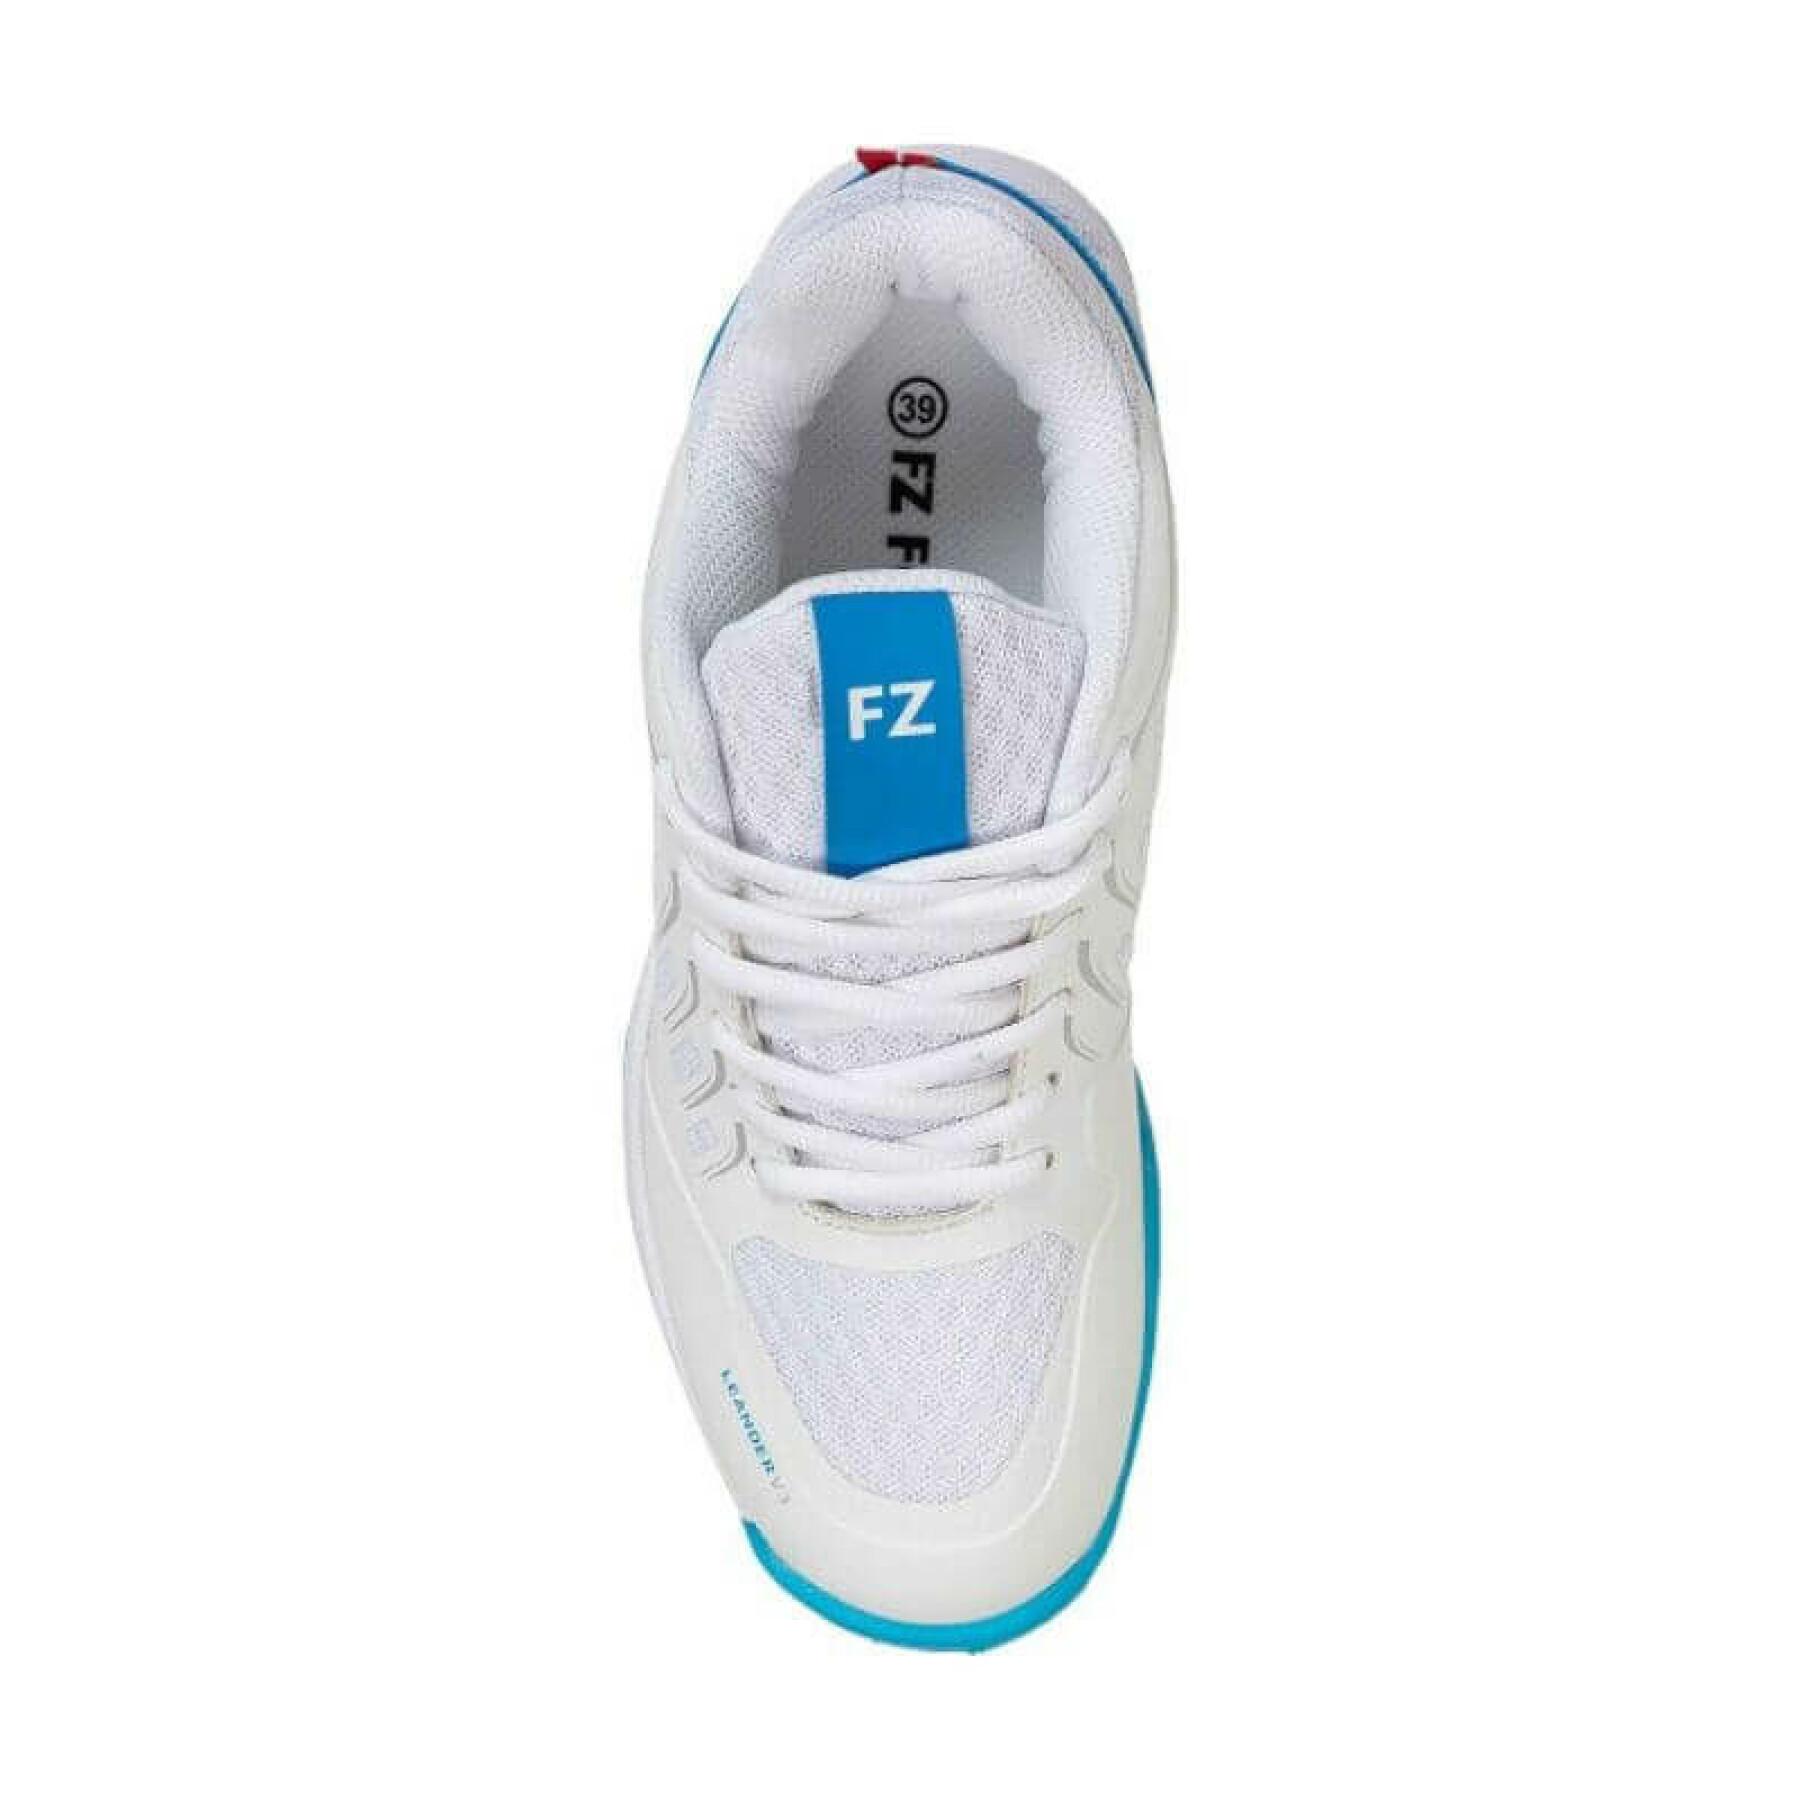 Sapatos de badminton para mulher FZ Forza Leander V3 1002